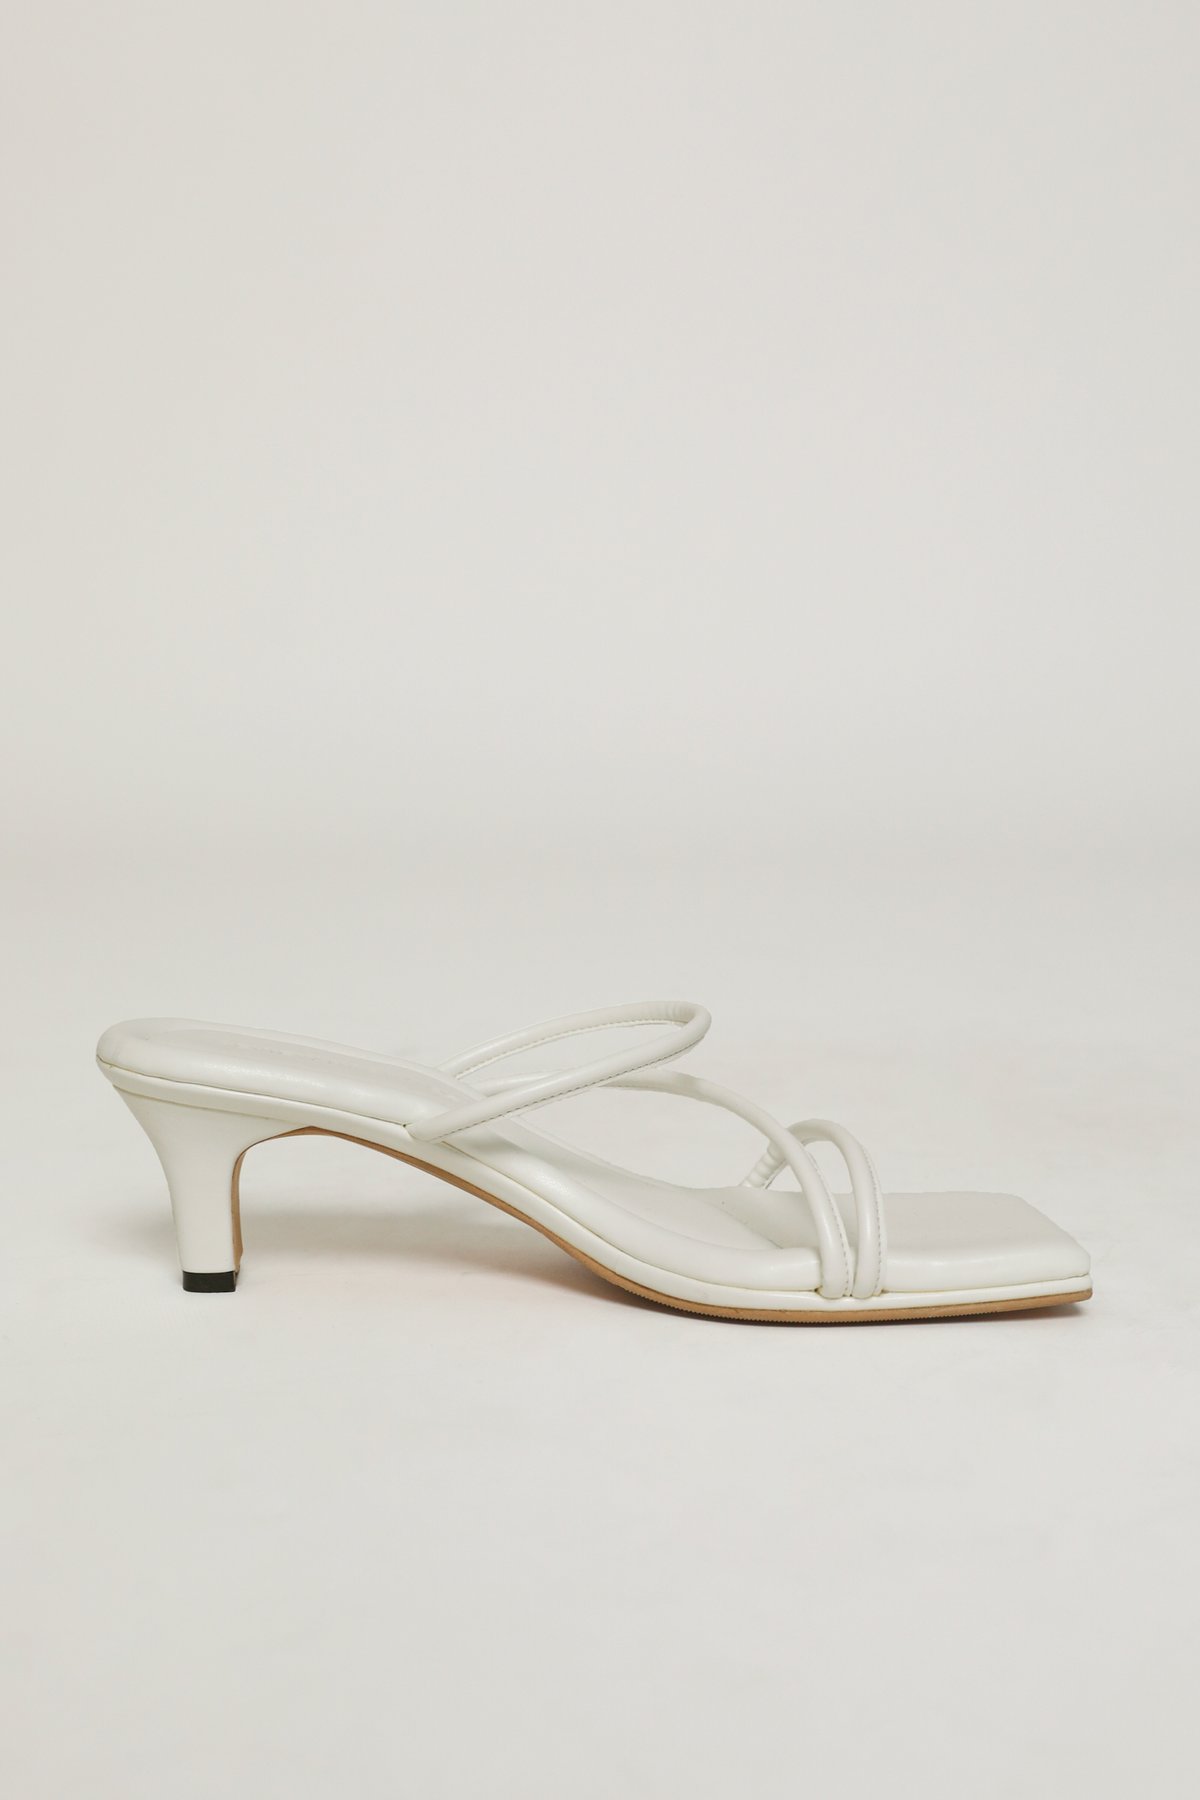 Sevieyanashoes (Cherries Heels - White)